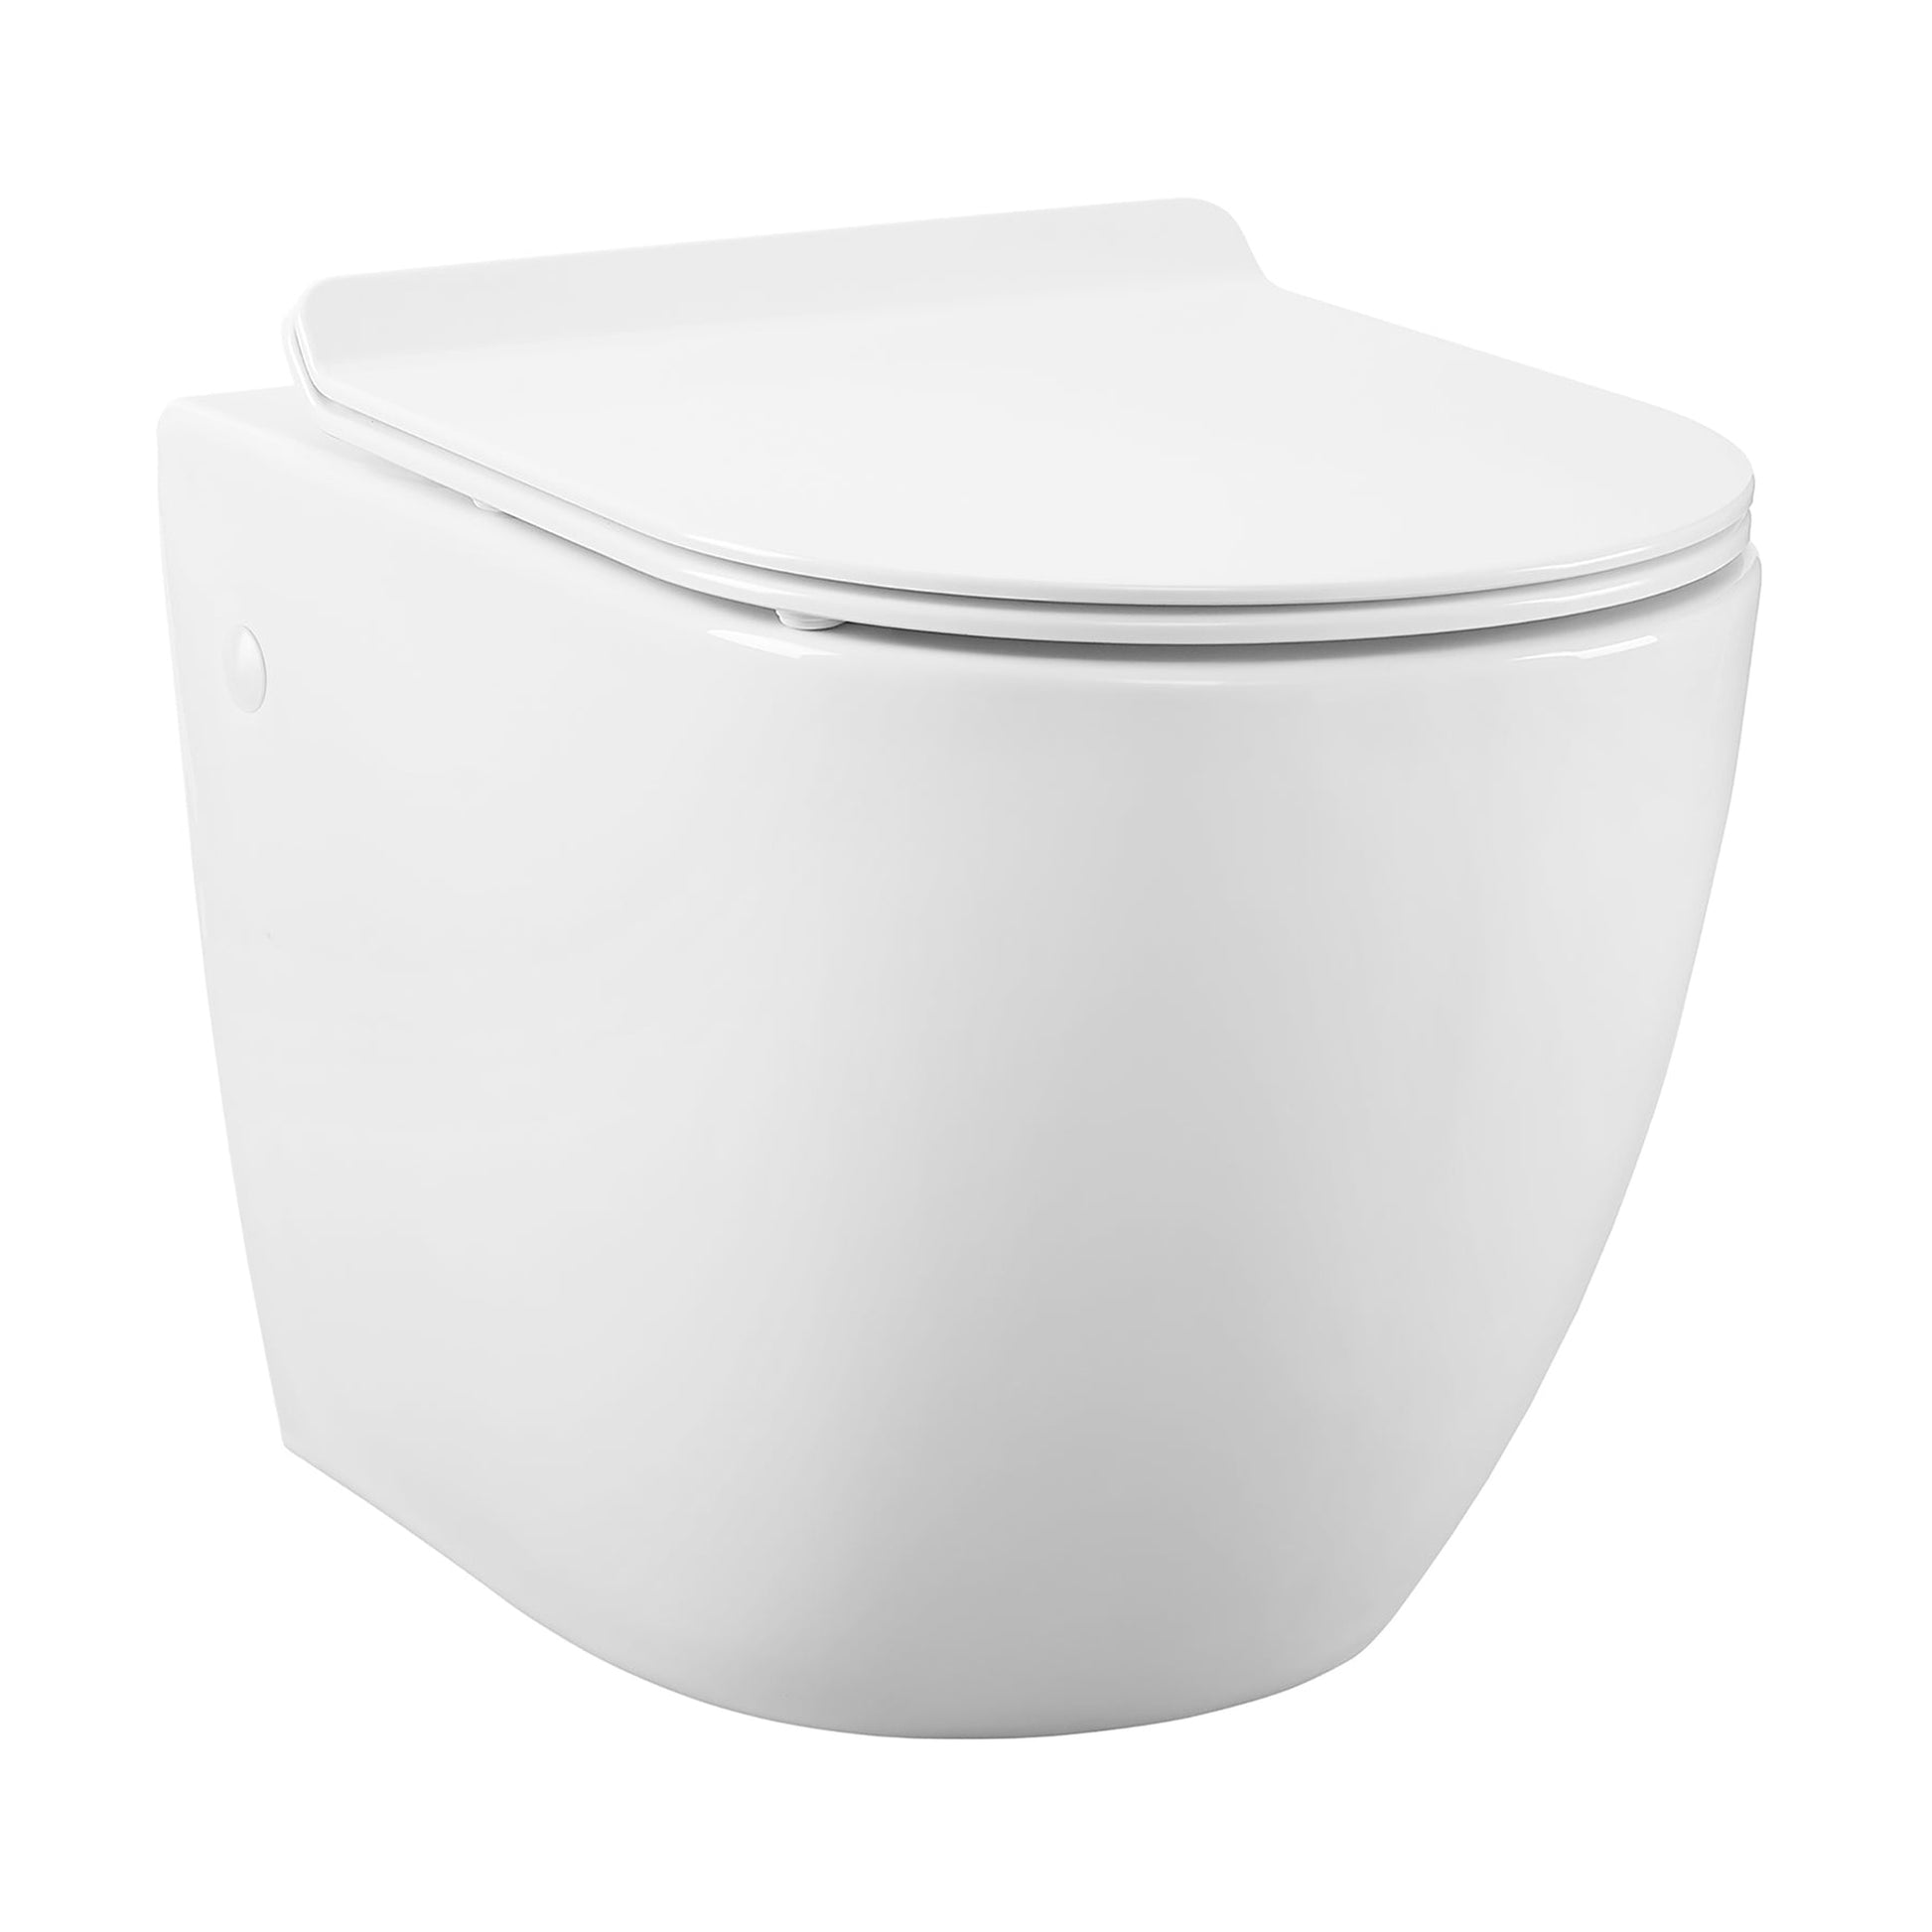 Swiss Madison St. Tropez 14" x 14" Glossy White Elongated Wall-Hung Toilet Bowl